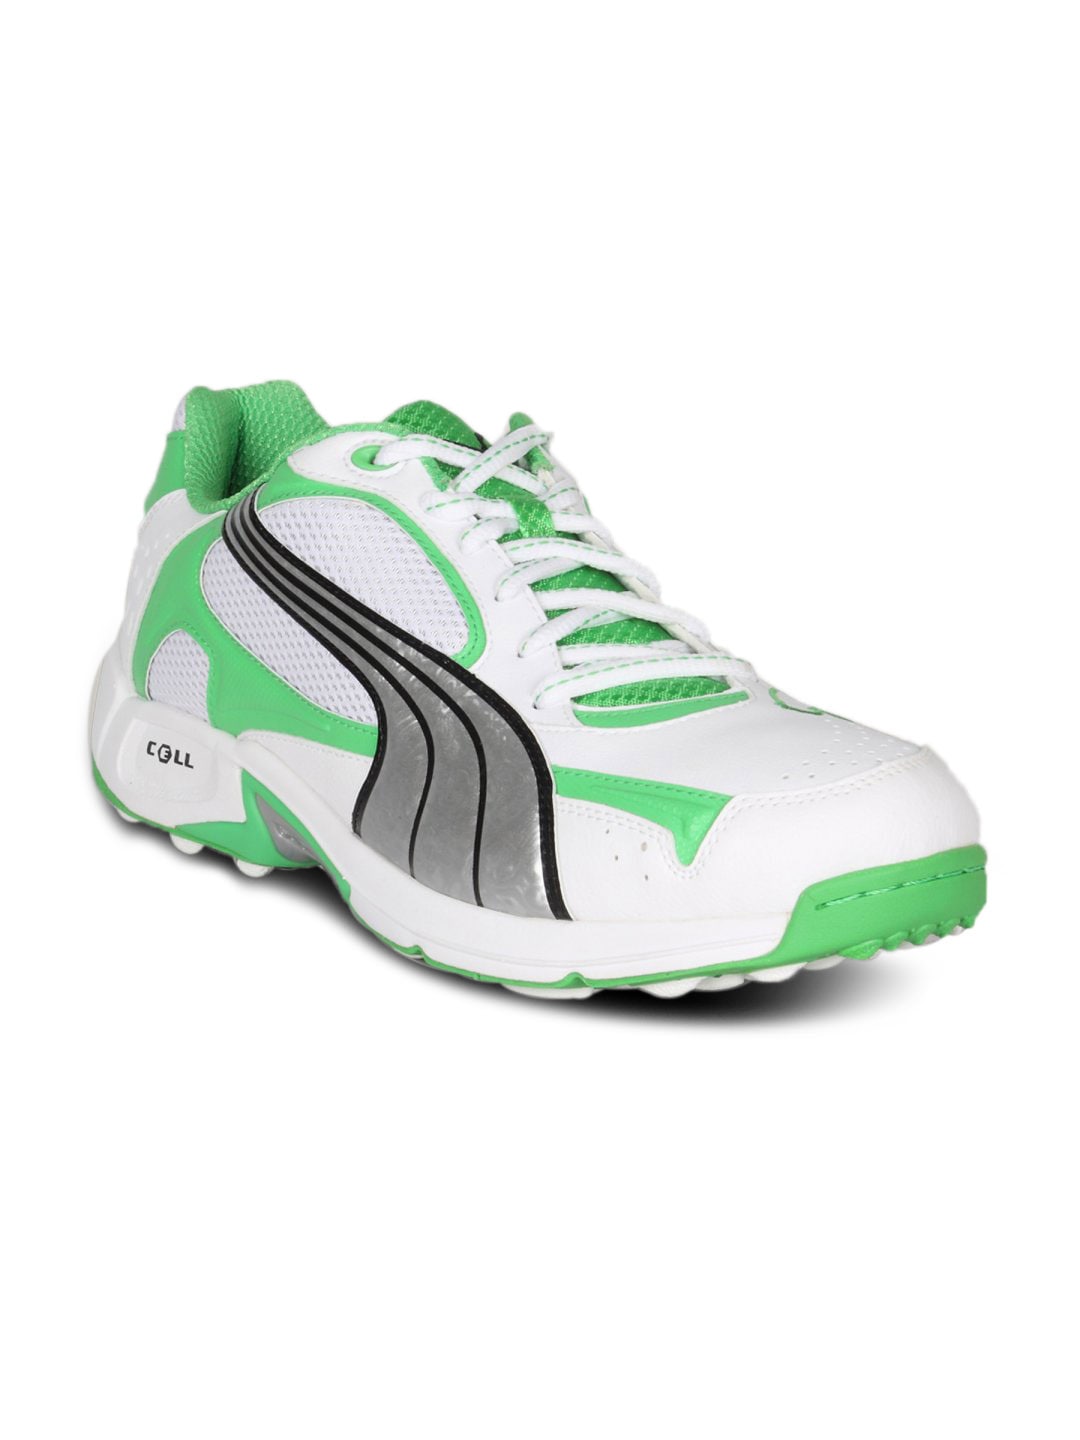 Puma Men's Ballistic Rubber Shoe